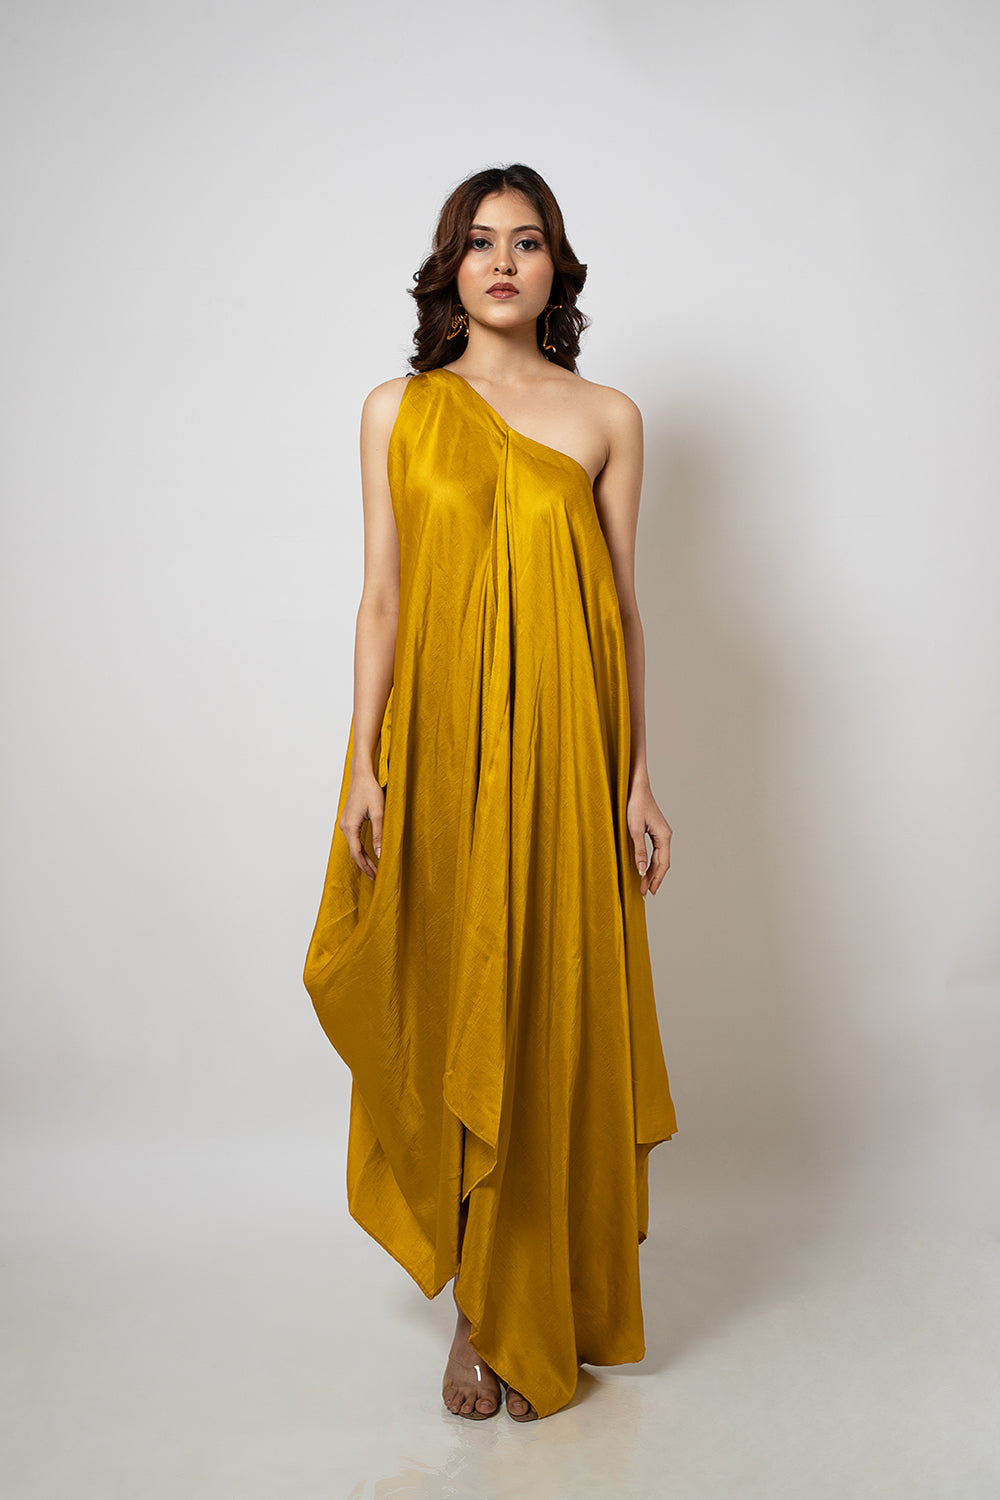 2. A zero waste one shoulder mustard yellow dress